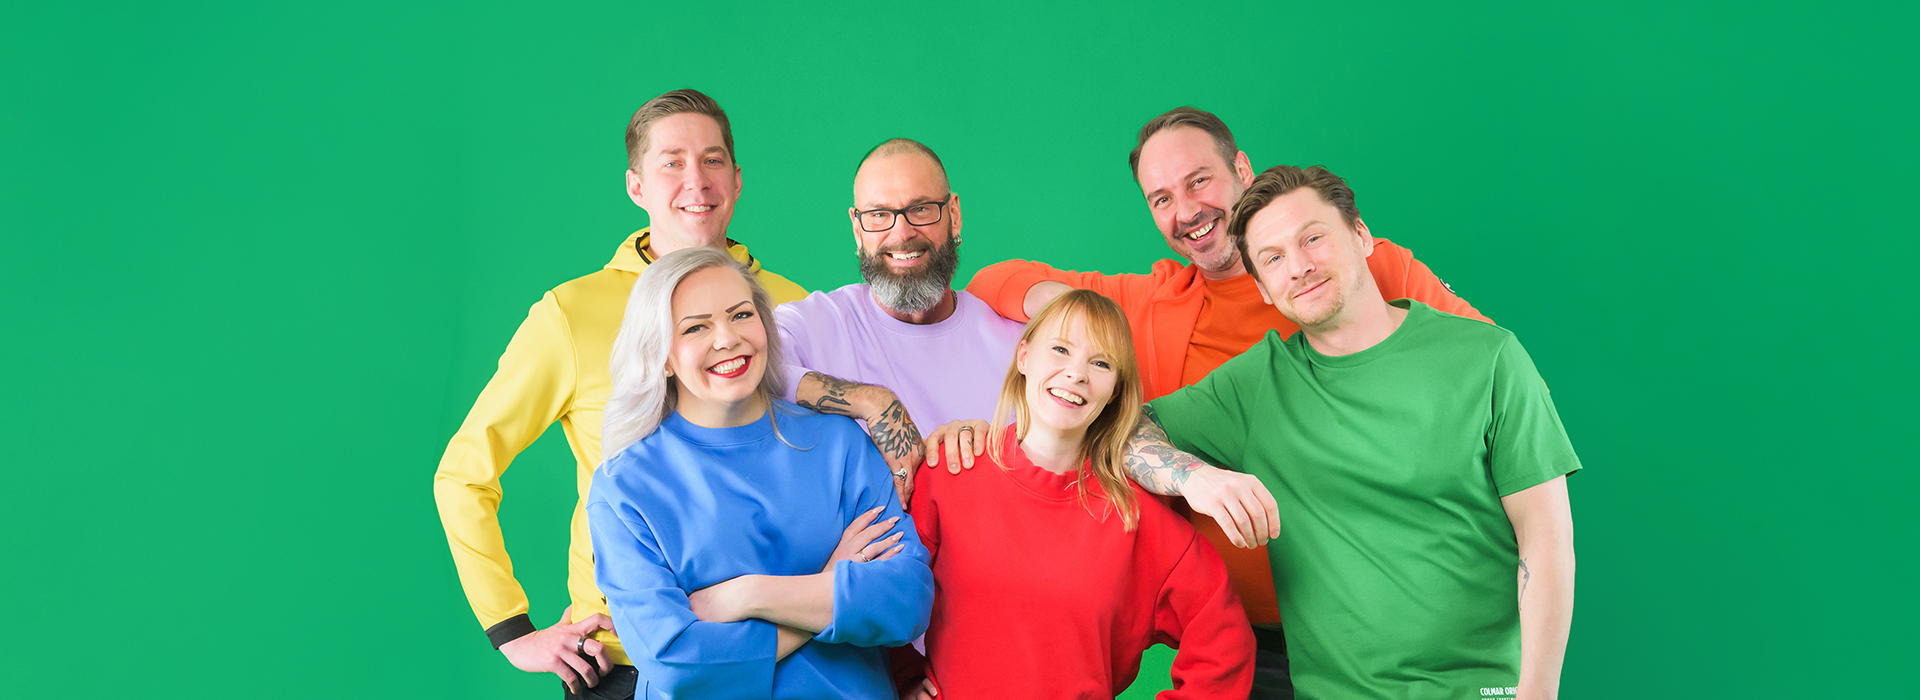 Kuusi värikkäissä vaatteissa olevaa henkilöä seisoo rykelmässä ja hymyilee kameralle.